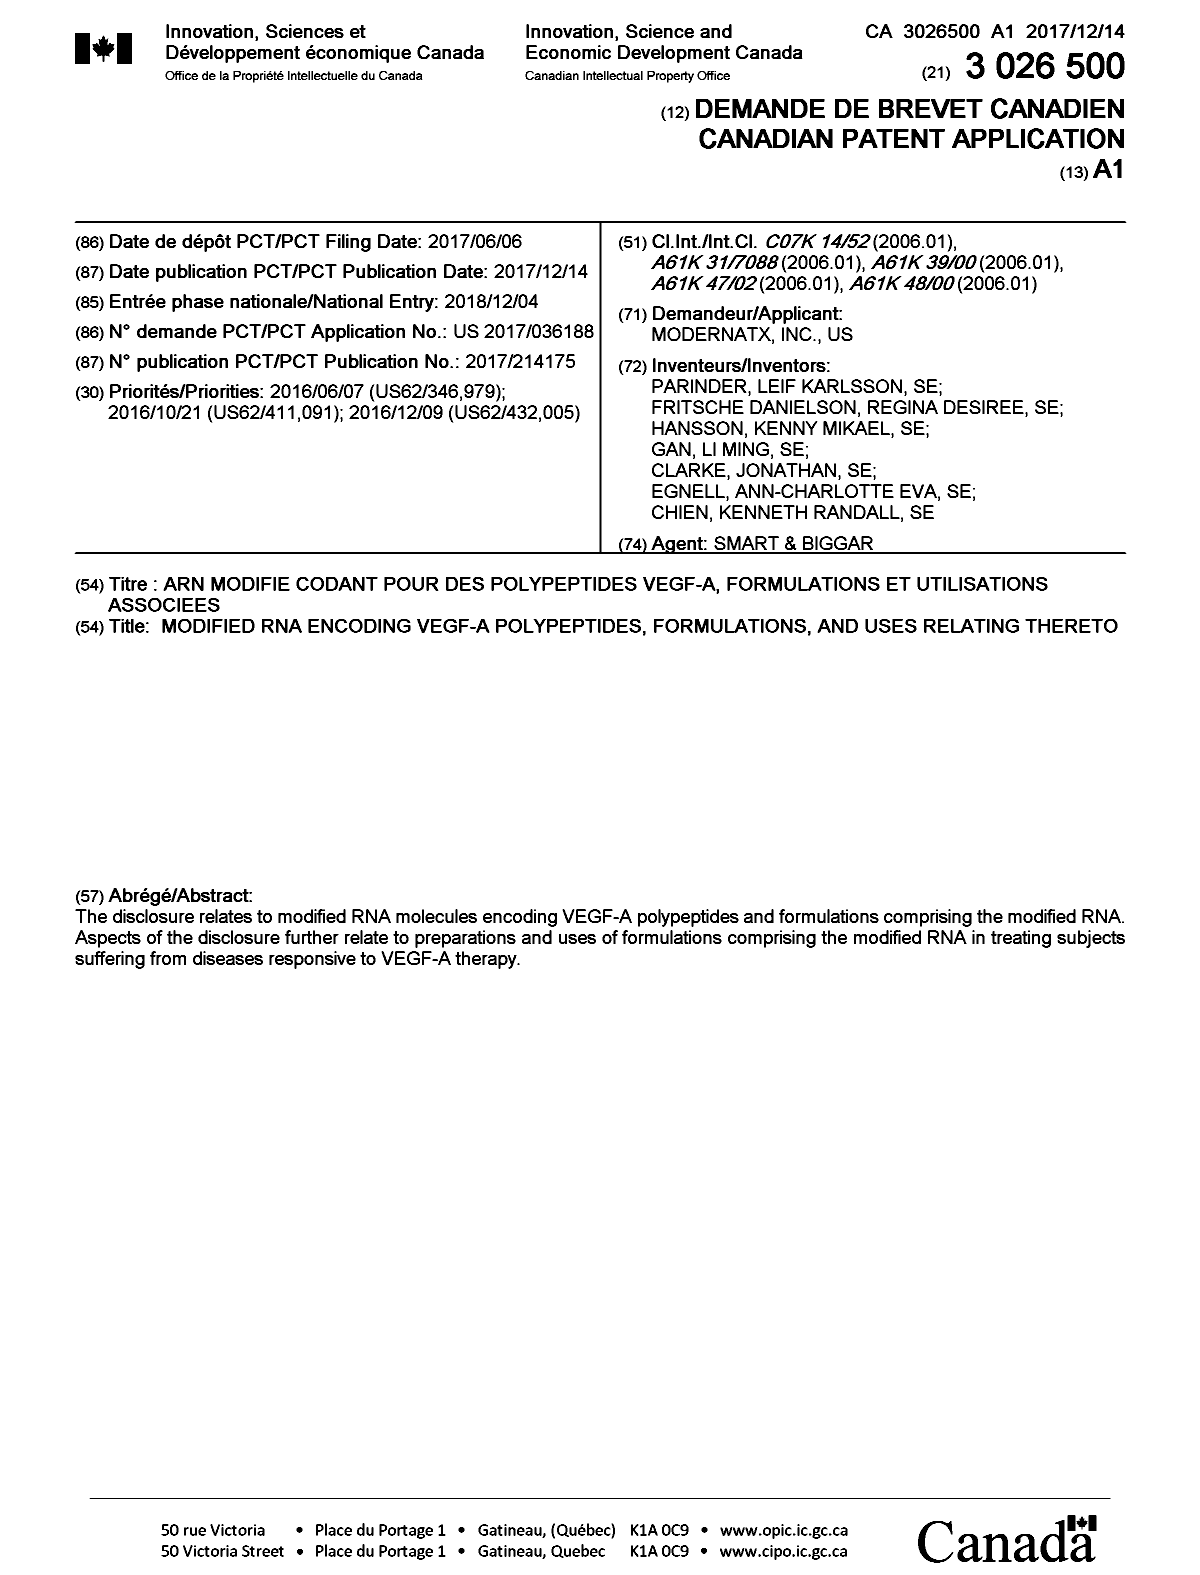 Document de brevet canadien 3026500. Page couverture 20181210. Image 1 de 1